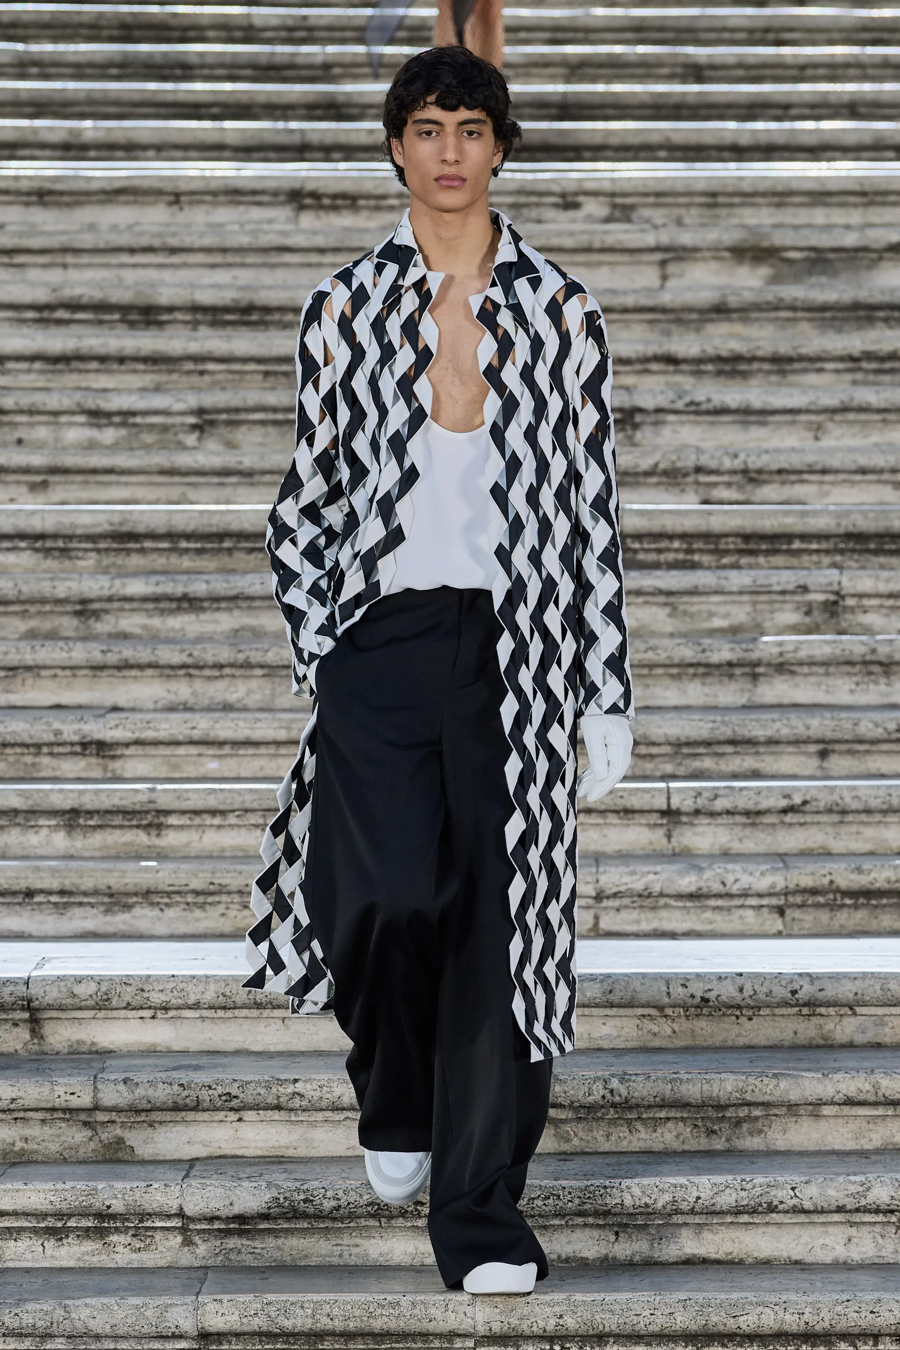 Valentino Haute Couture 2022: BST khiến Dior phải làm đơn khiếu nại - Ảnh 12